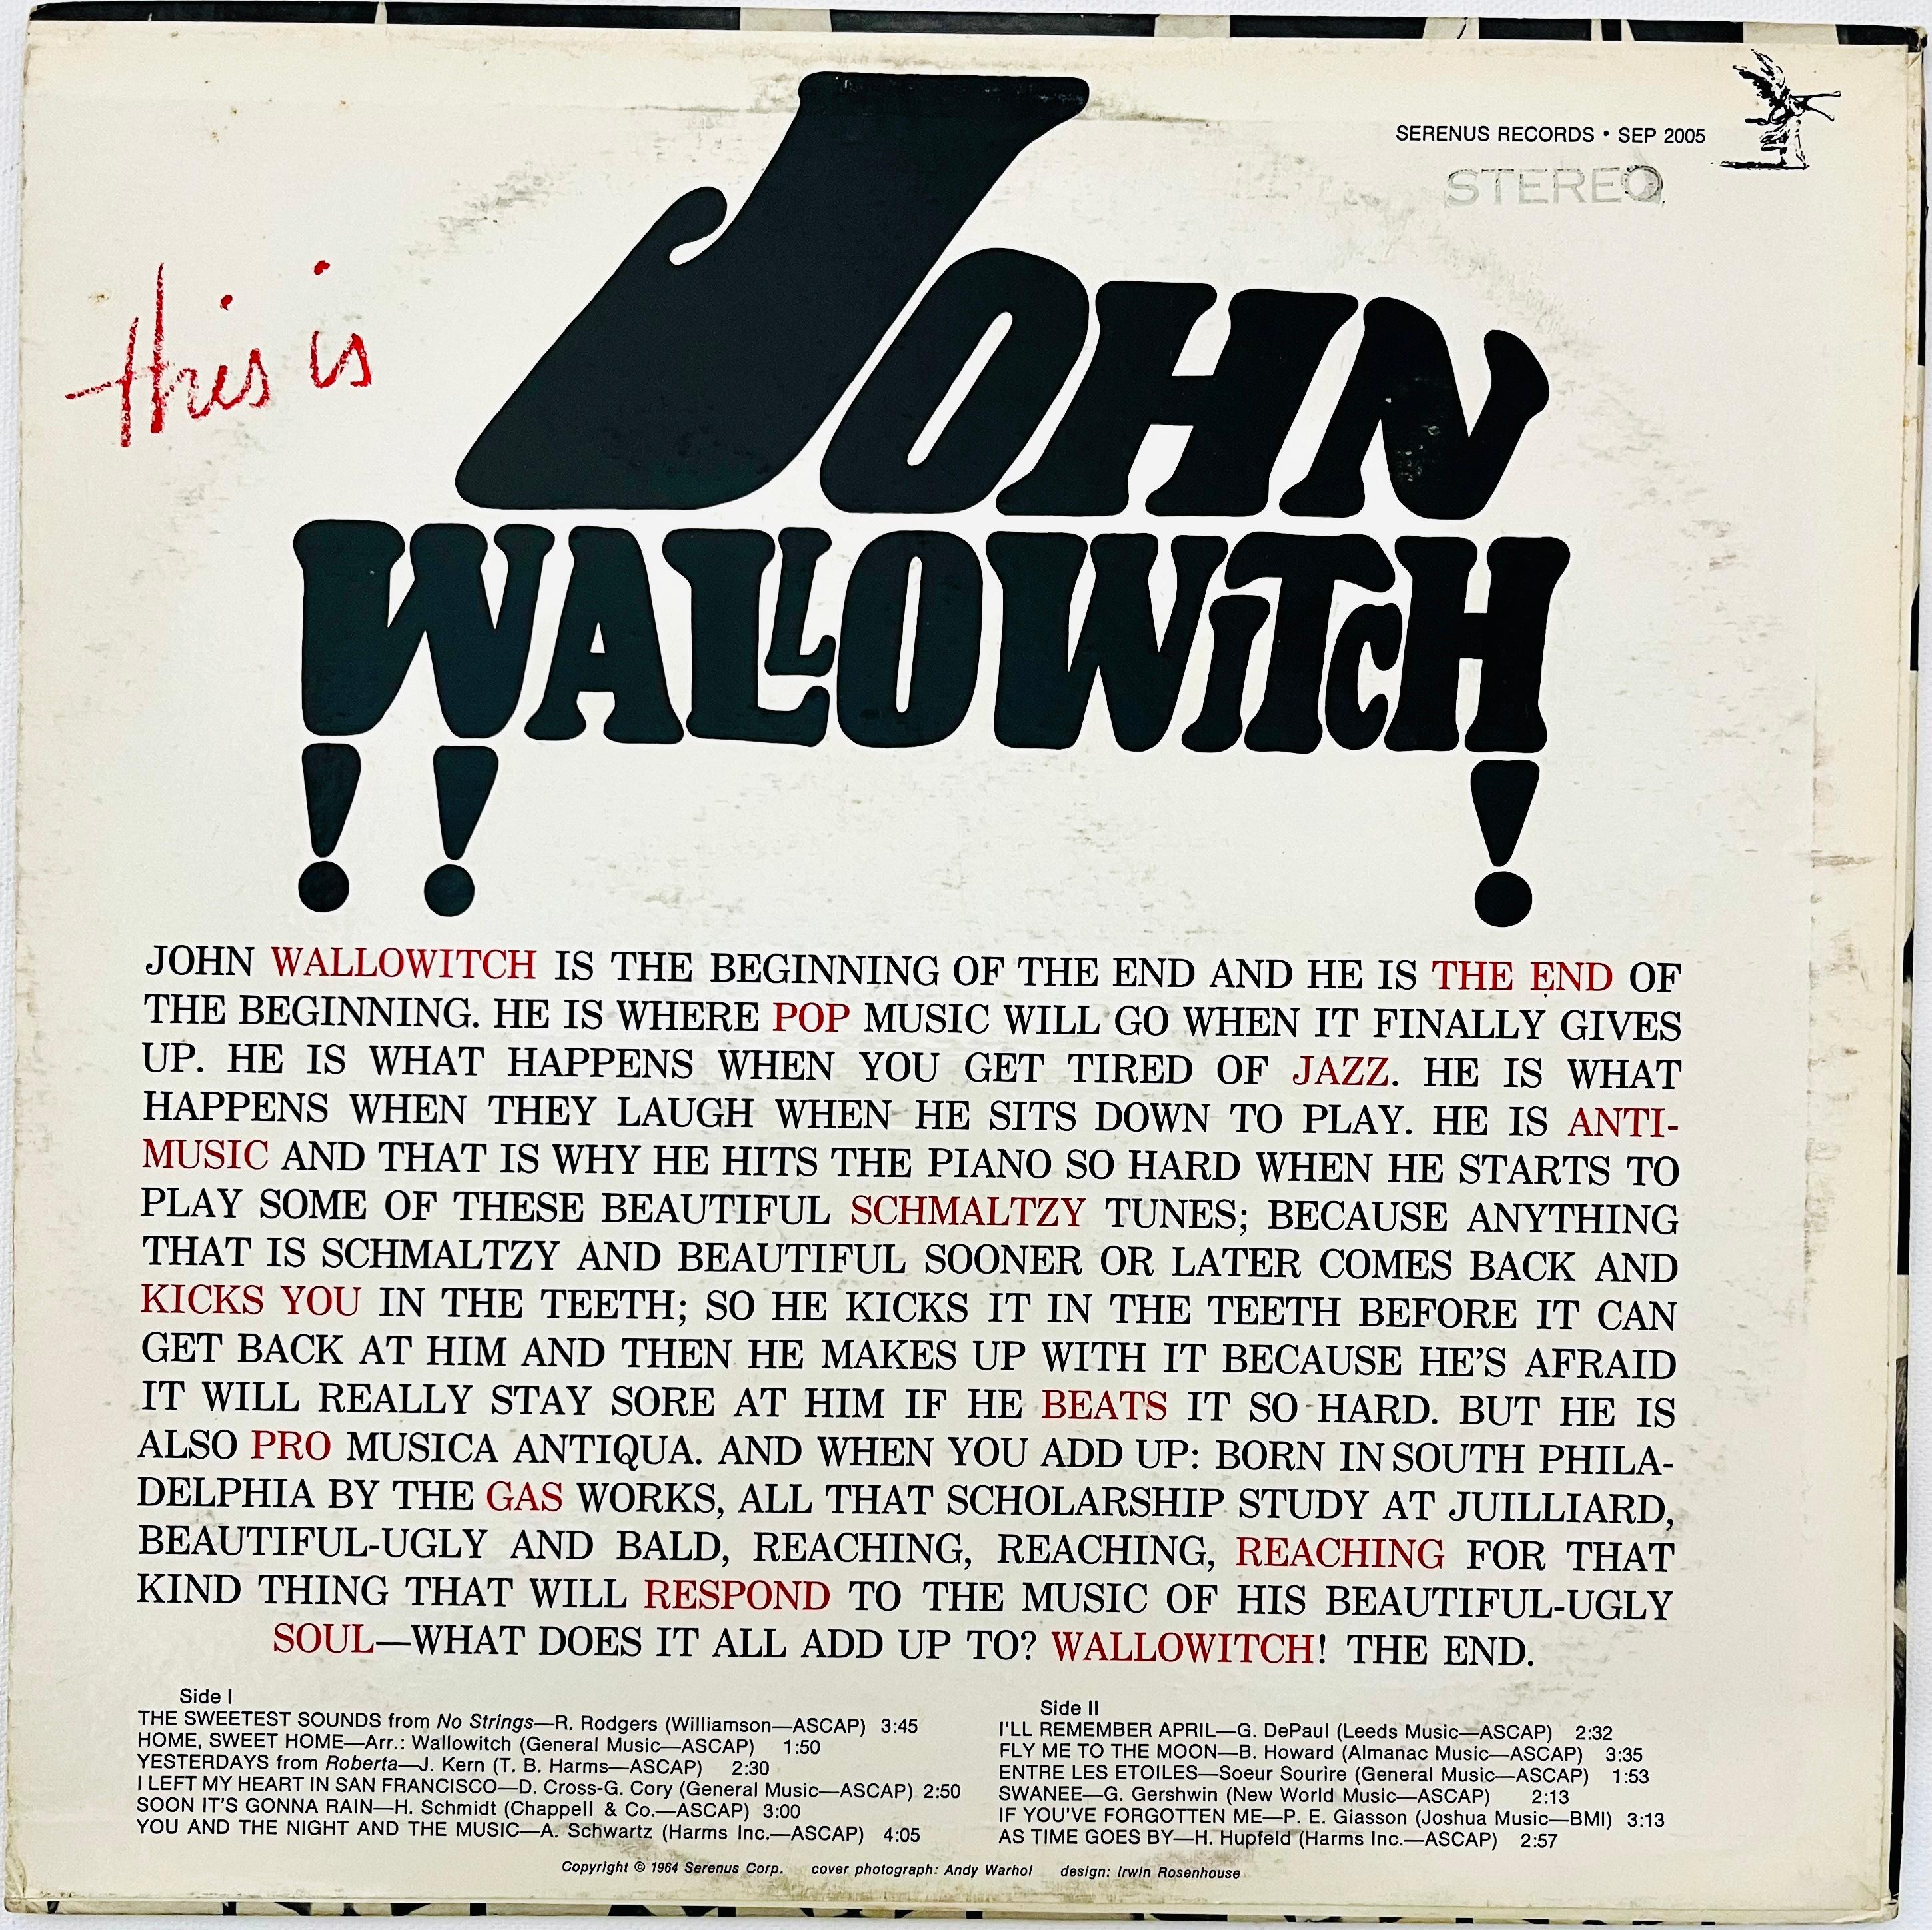 John Wallowitch 
Voici John Wallowitch, 1964
Sérénus 
Vinly, LP
SEP 2005
Illustration de la couverture : Andy Warhol

1964 1er pressage, 'This Is John Wallowitch' avec une couverture originale d'Andy Warhol. L'une des illustrations les plus rares de